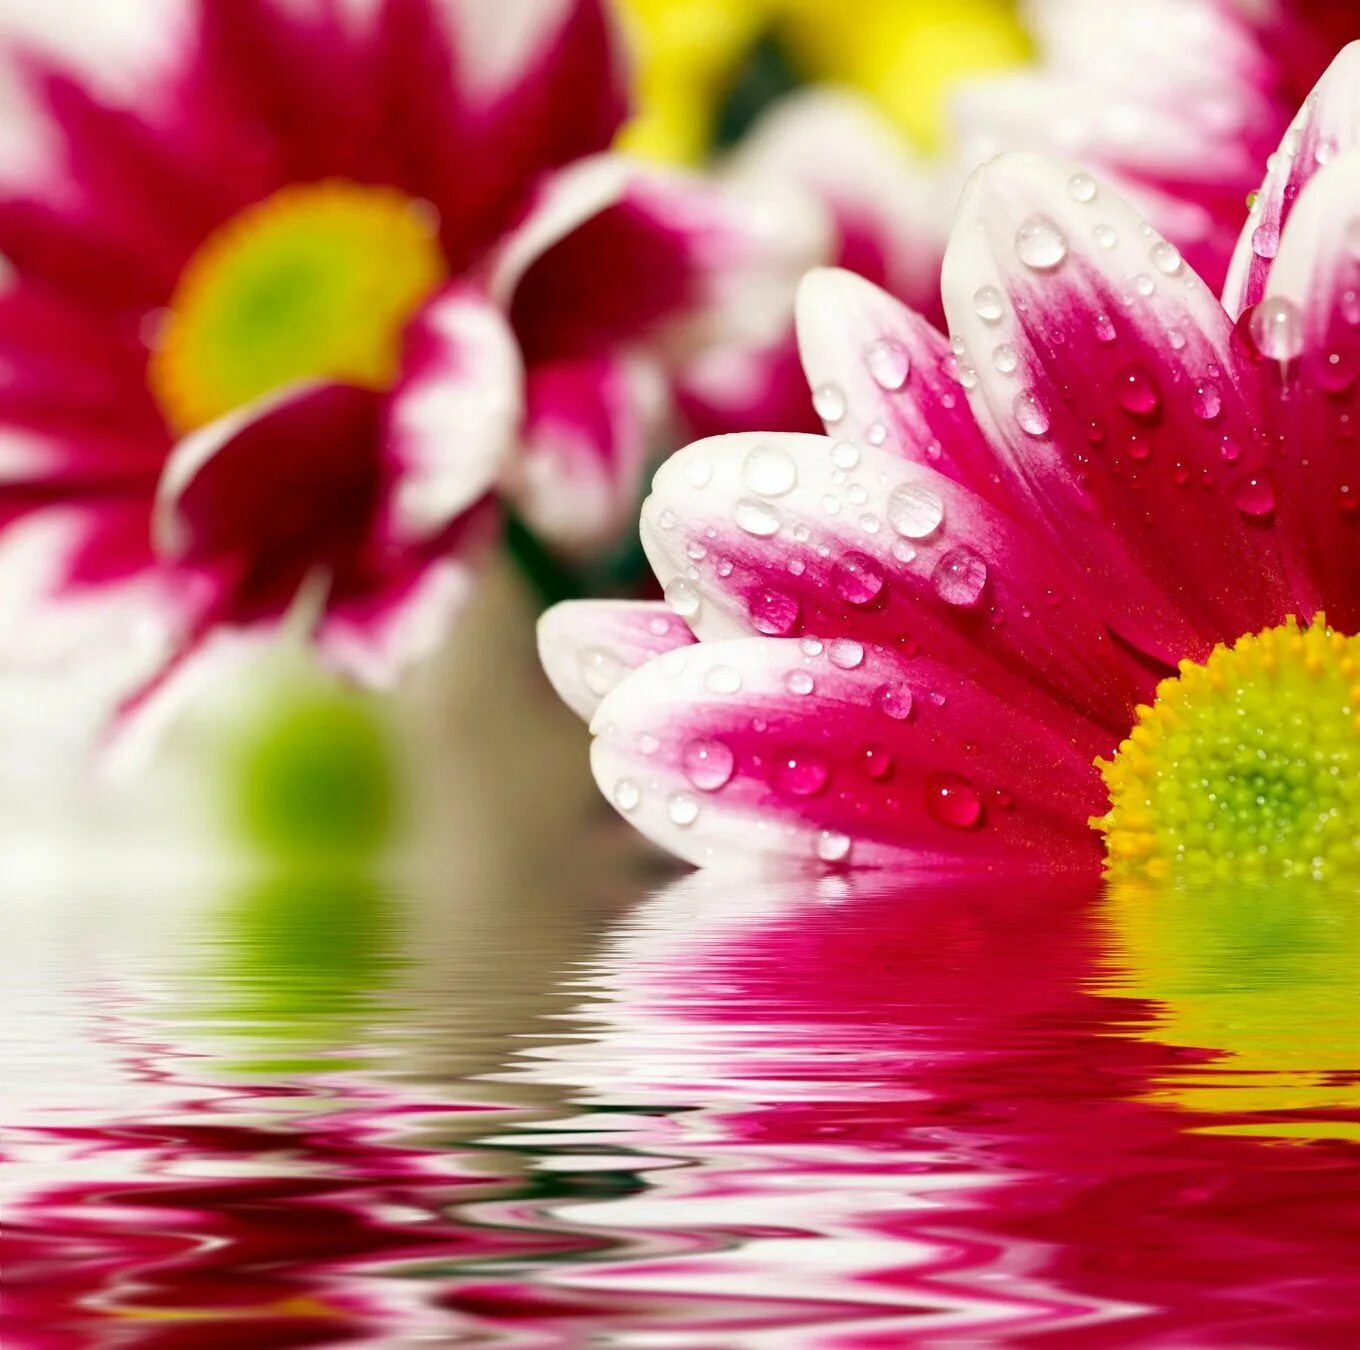 Хорошего настроения картинки красивые. Открытки хорошего дня. Пожелания удачного дня. Красивые пожелания хорошего дня. Яркие цветы в воде.